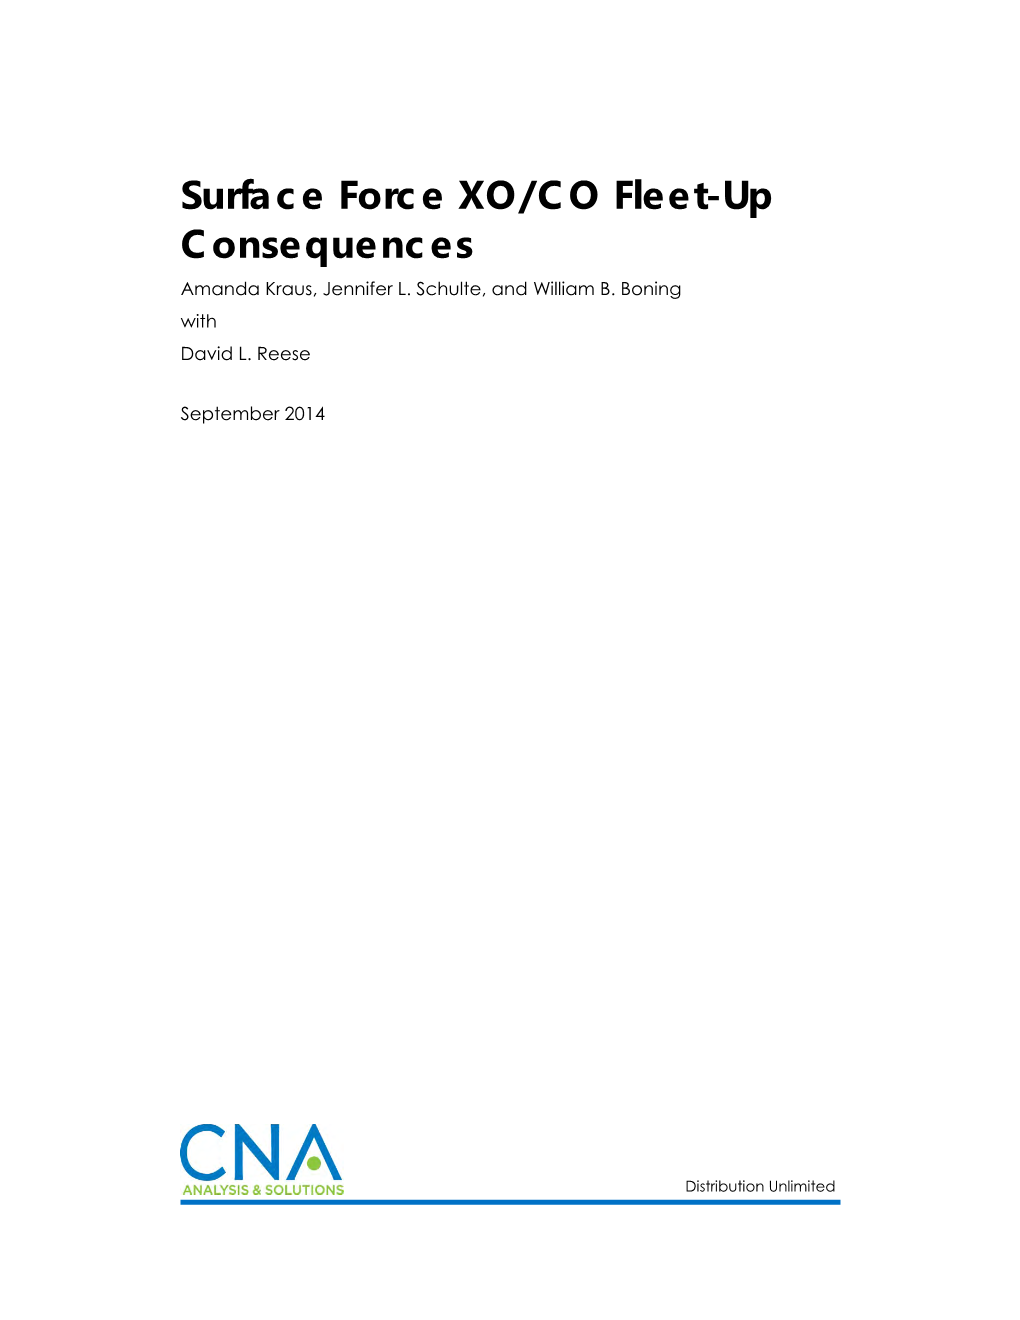 Surface Force XO/CO Fleet-Up Consequences Amanda Kraus, Jennifer L